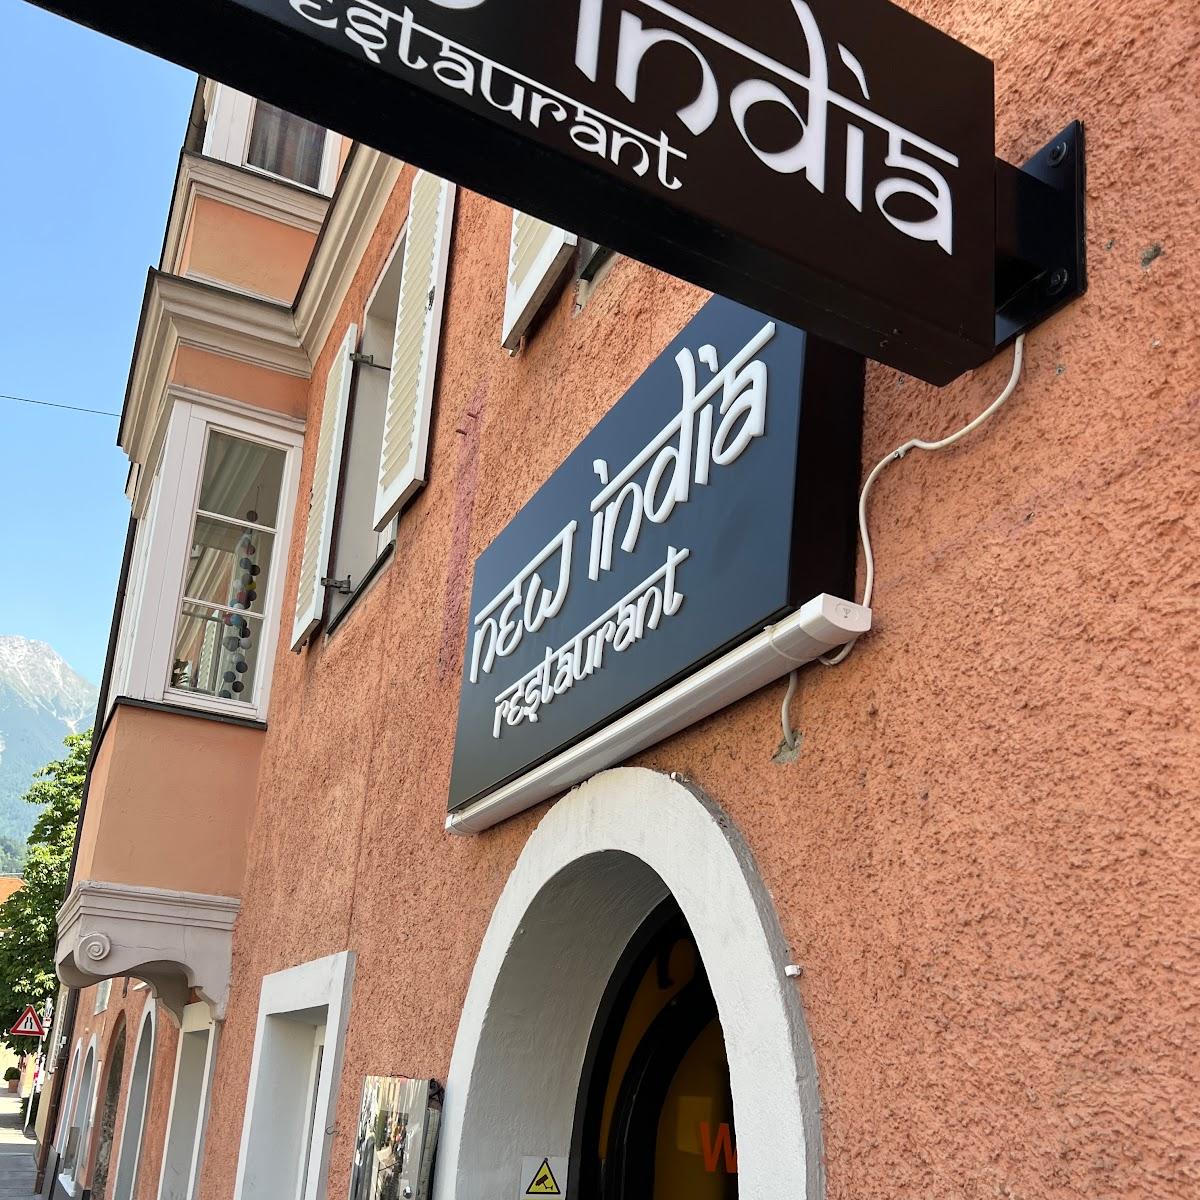 Restaurant "New INDIA Restaurant" in Innsbruck